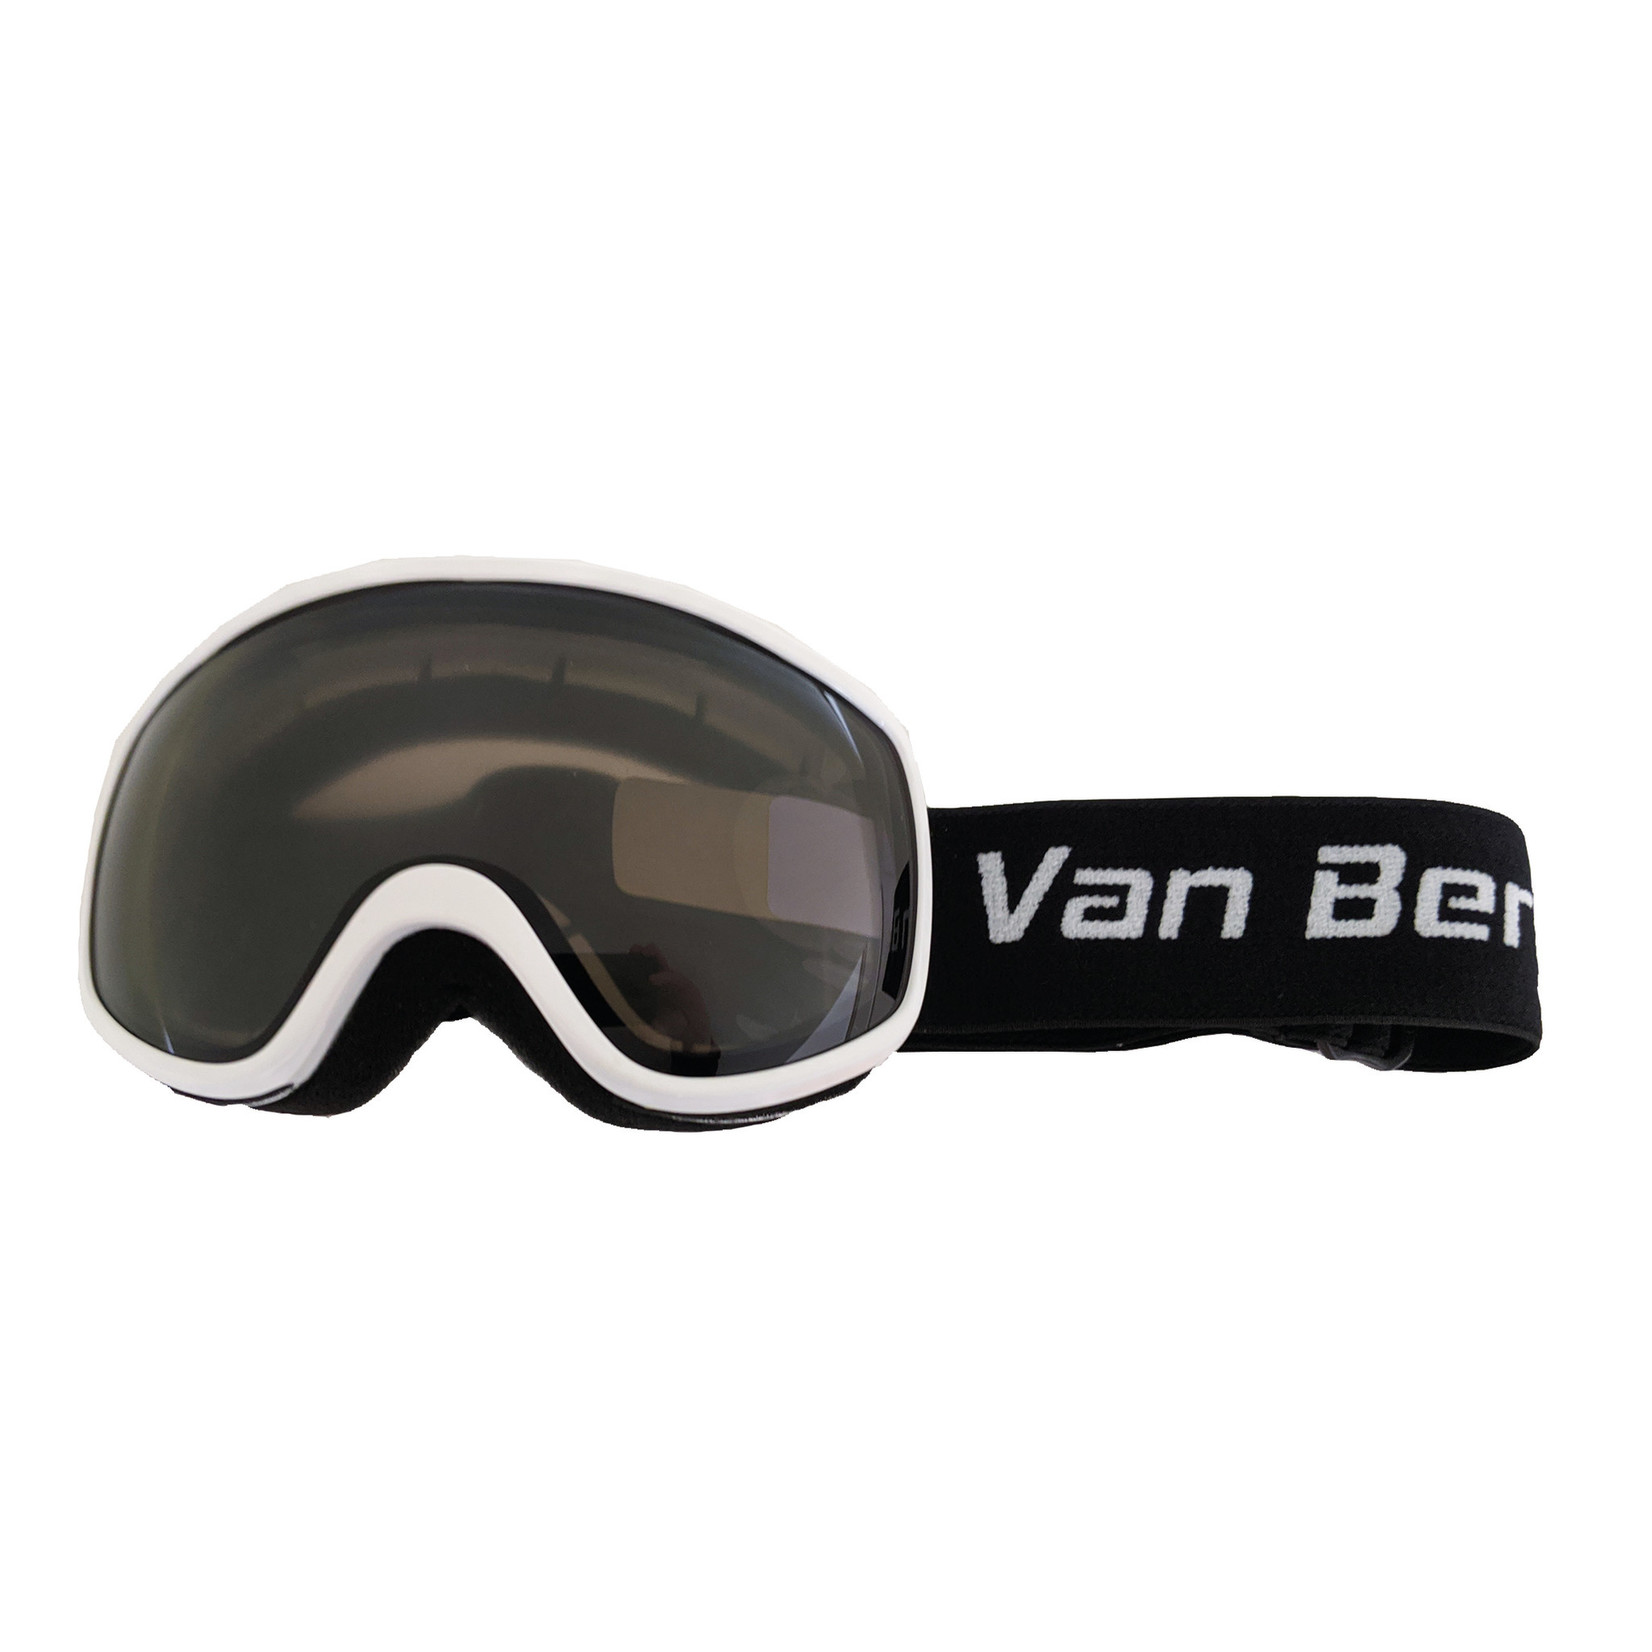 Van Bergen VAN BERGËN Yh163 lunette de ski junior